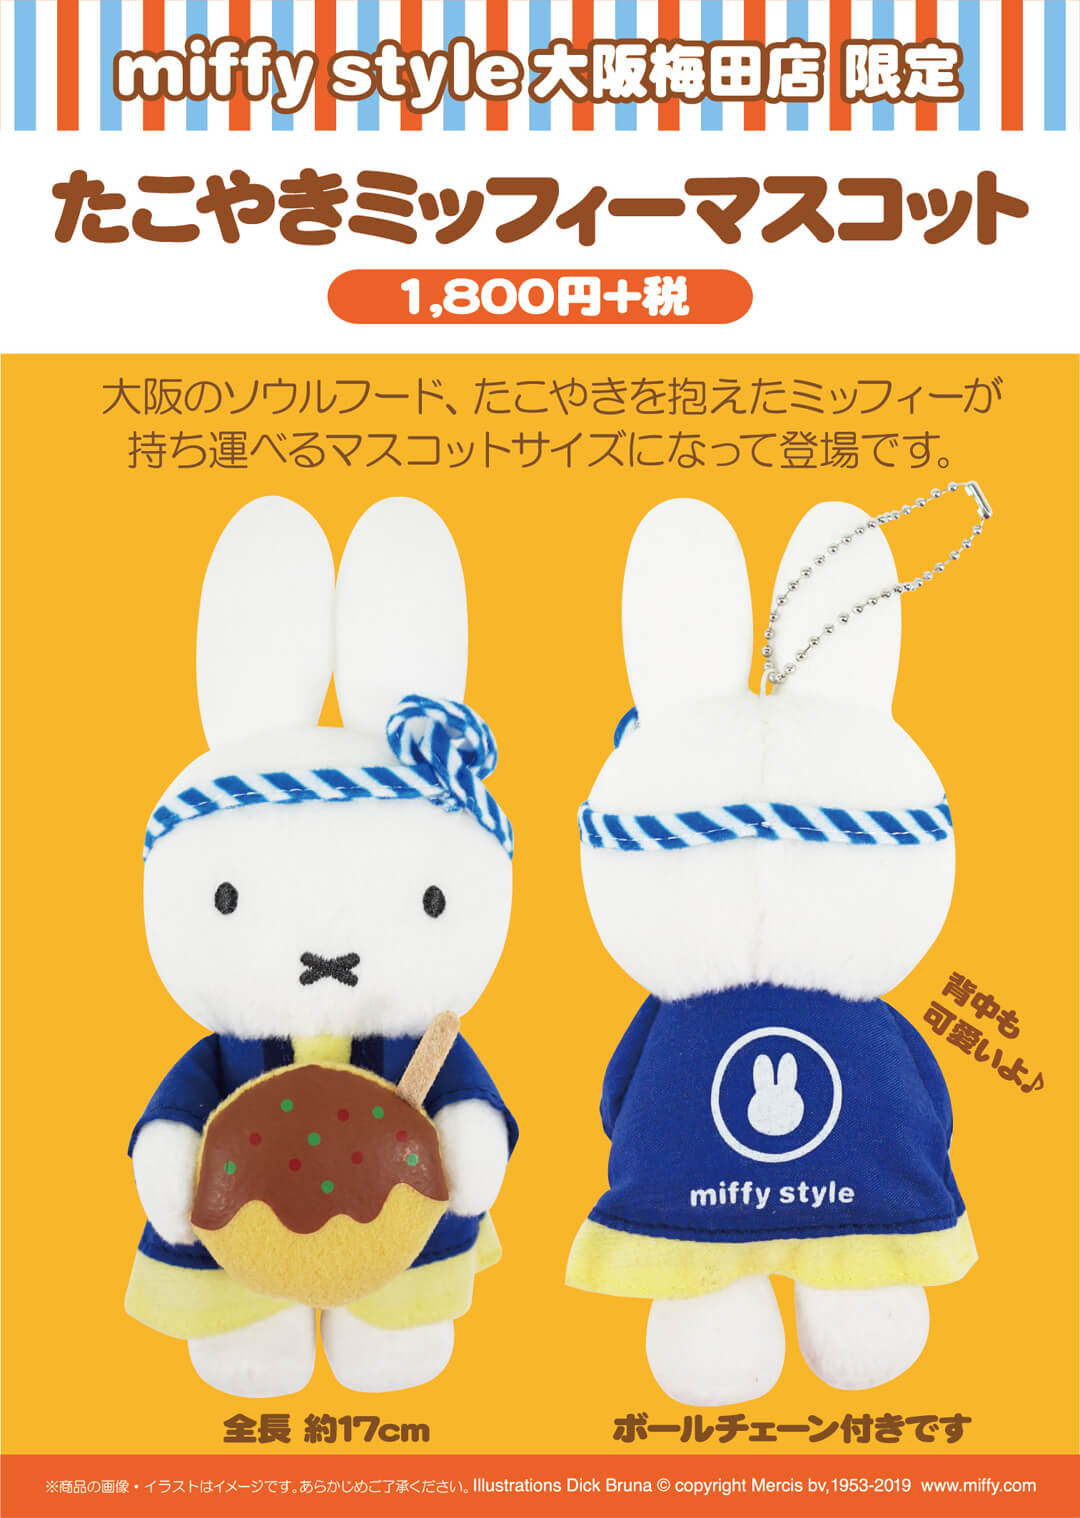 8月3日（土）発売予定!miffy style 大阪梅田限定 たこ焼きミッフィー